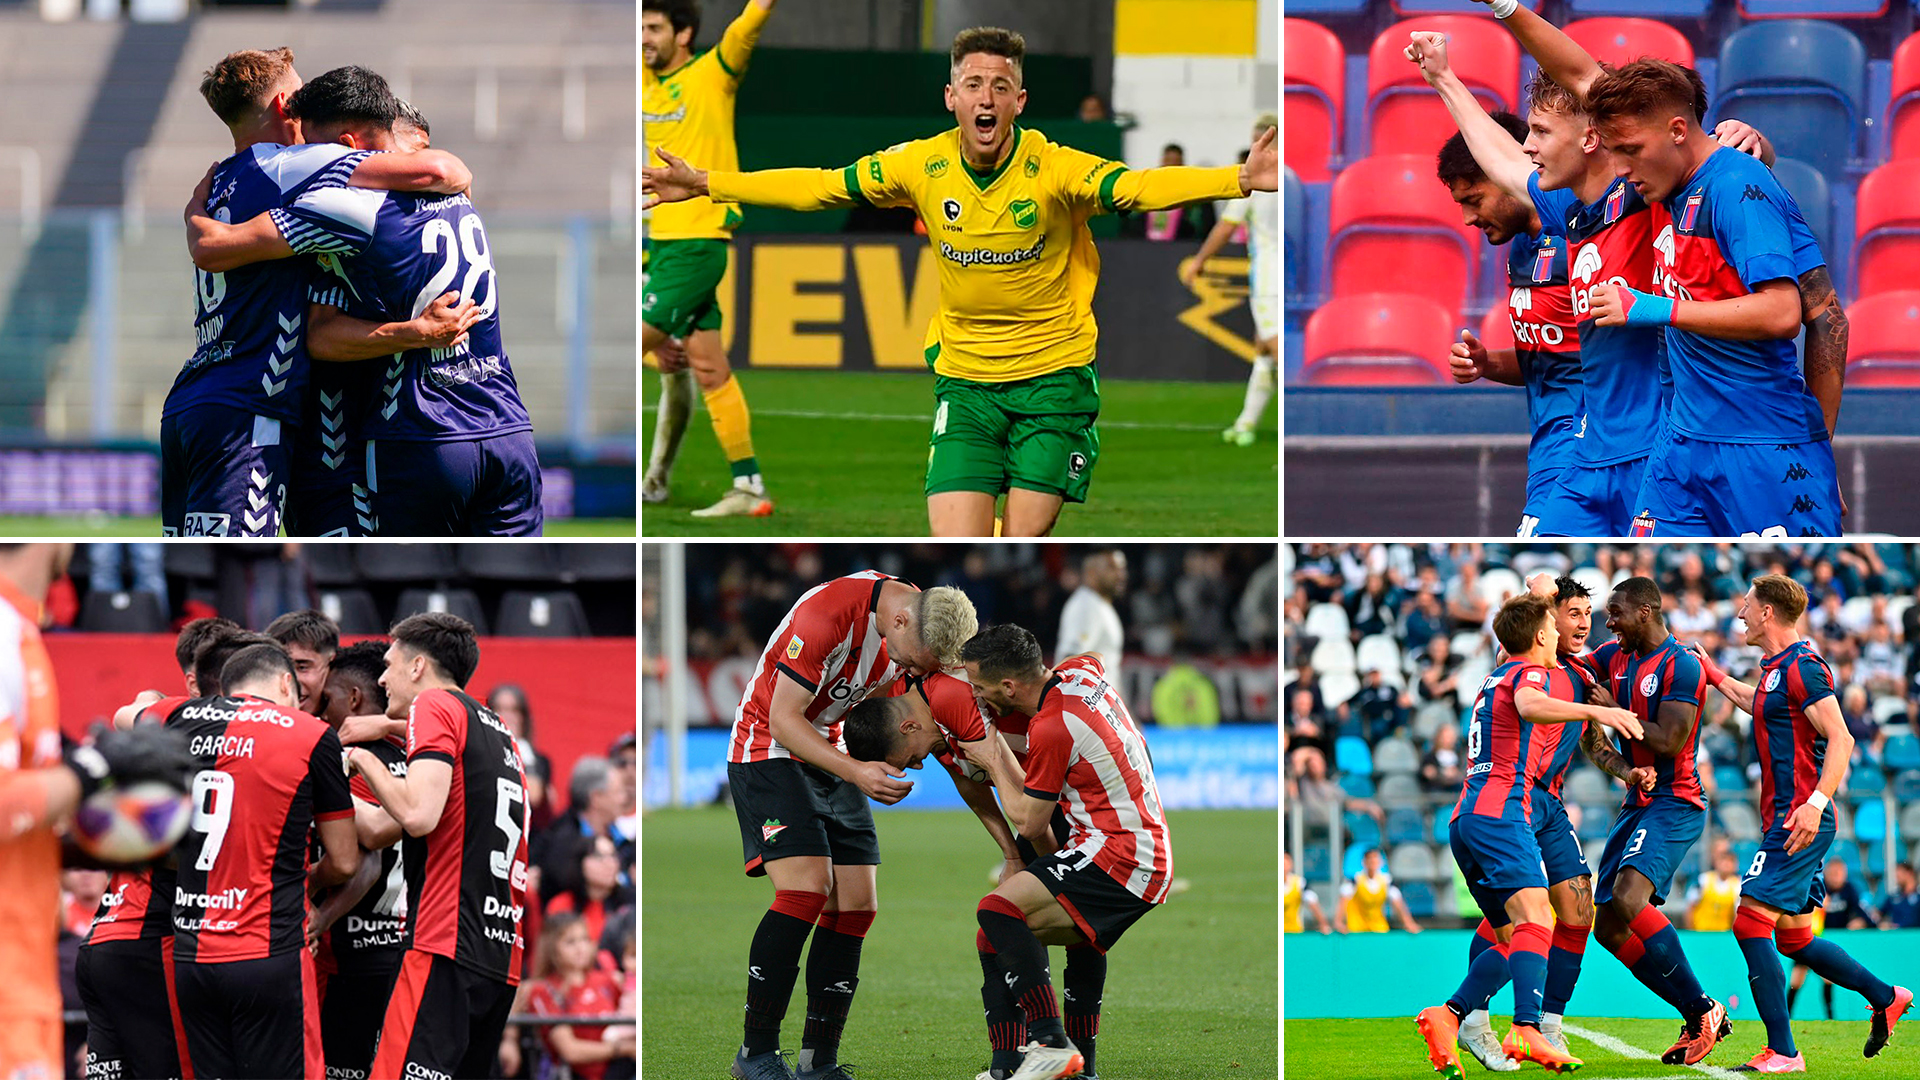 Los clasificados a la Copa Sudamericana: Gimnasia, Defensa y Justicia, Tigre, Newell's, Estudiantes y San Lorenzo.